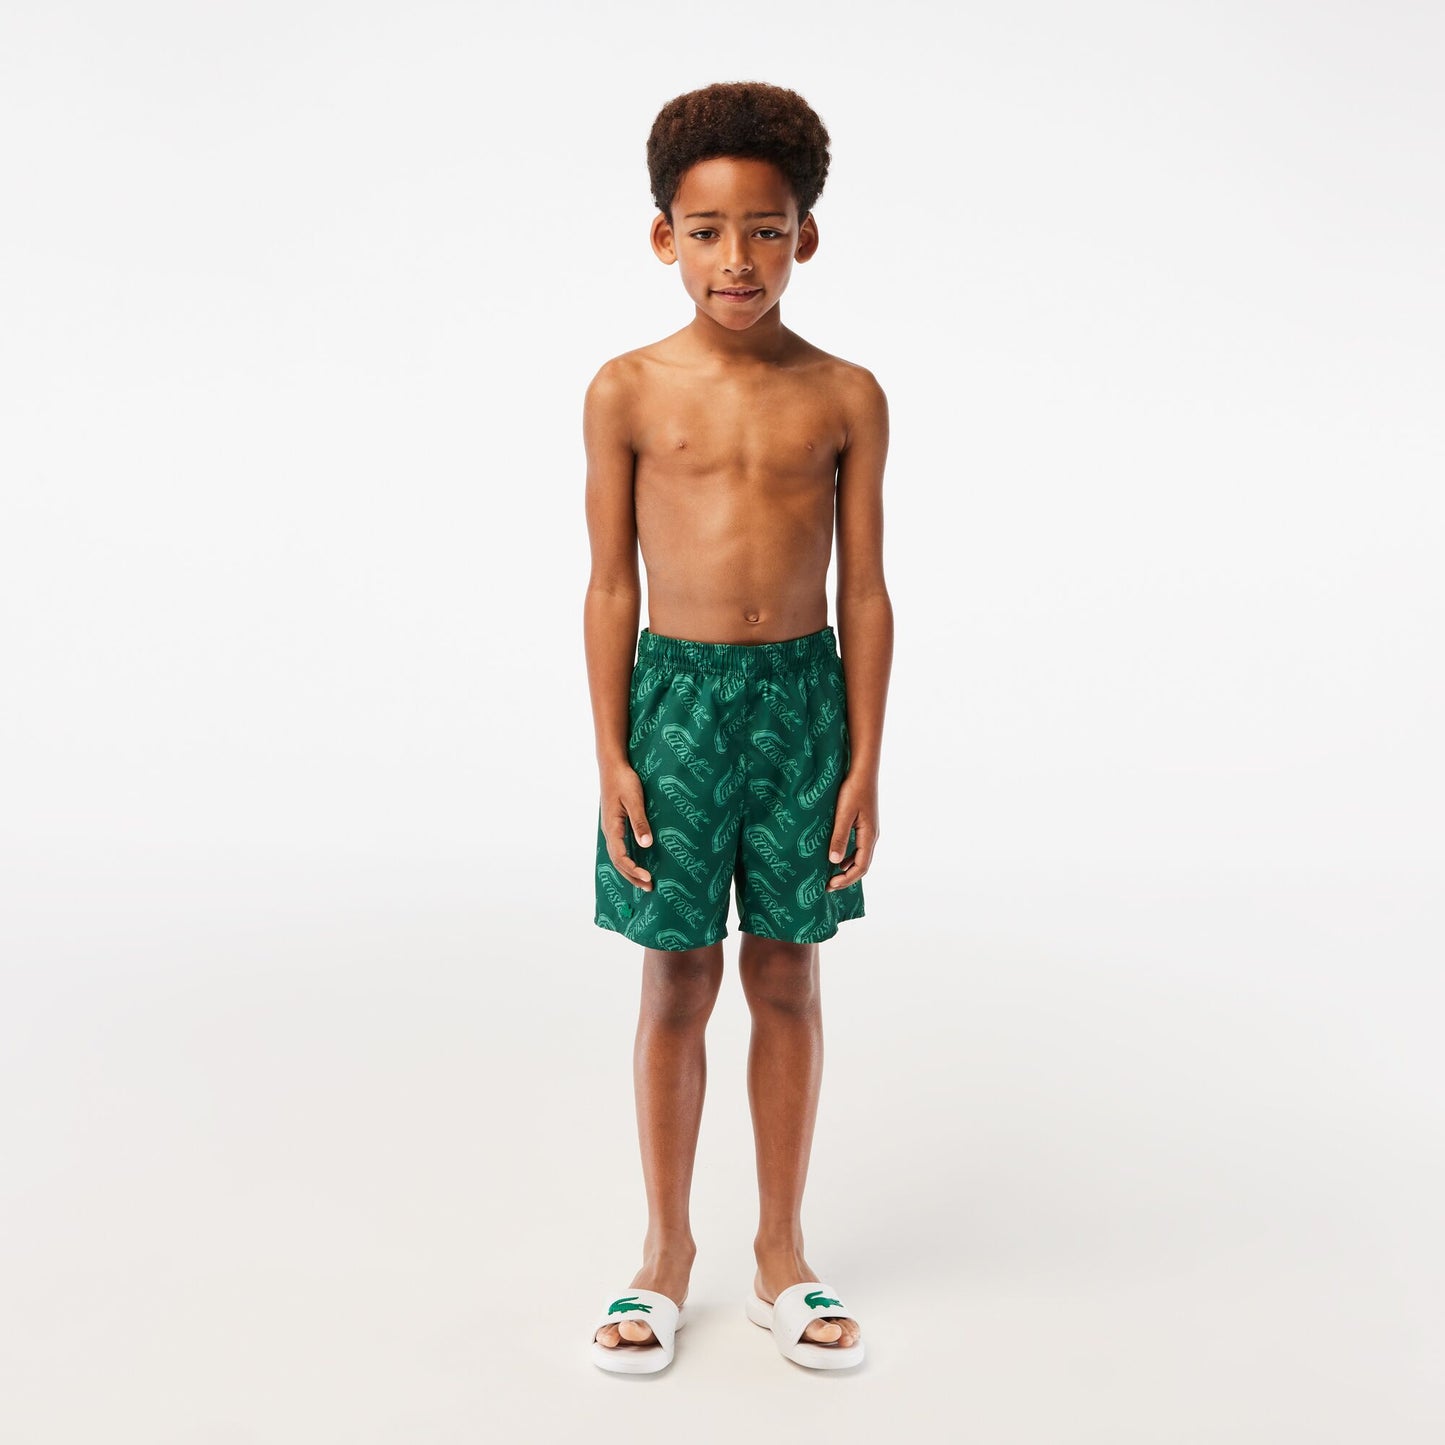 Boy's Lacoste Croc Print Swimsuit - MJ5487